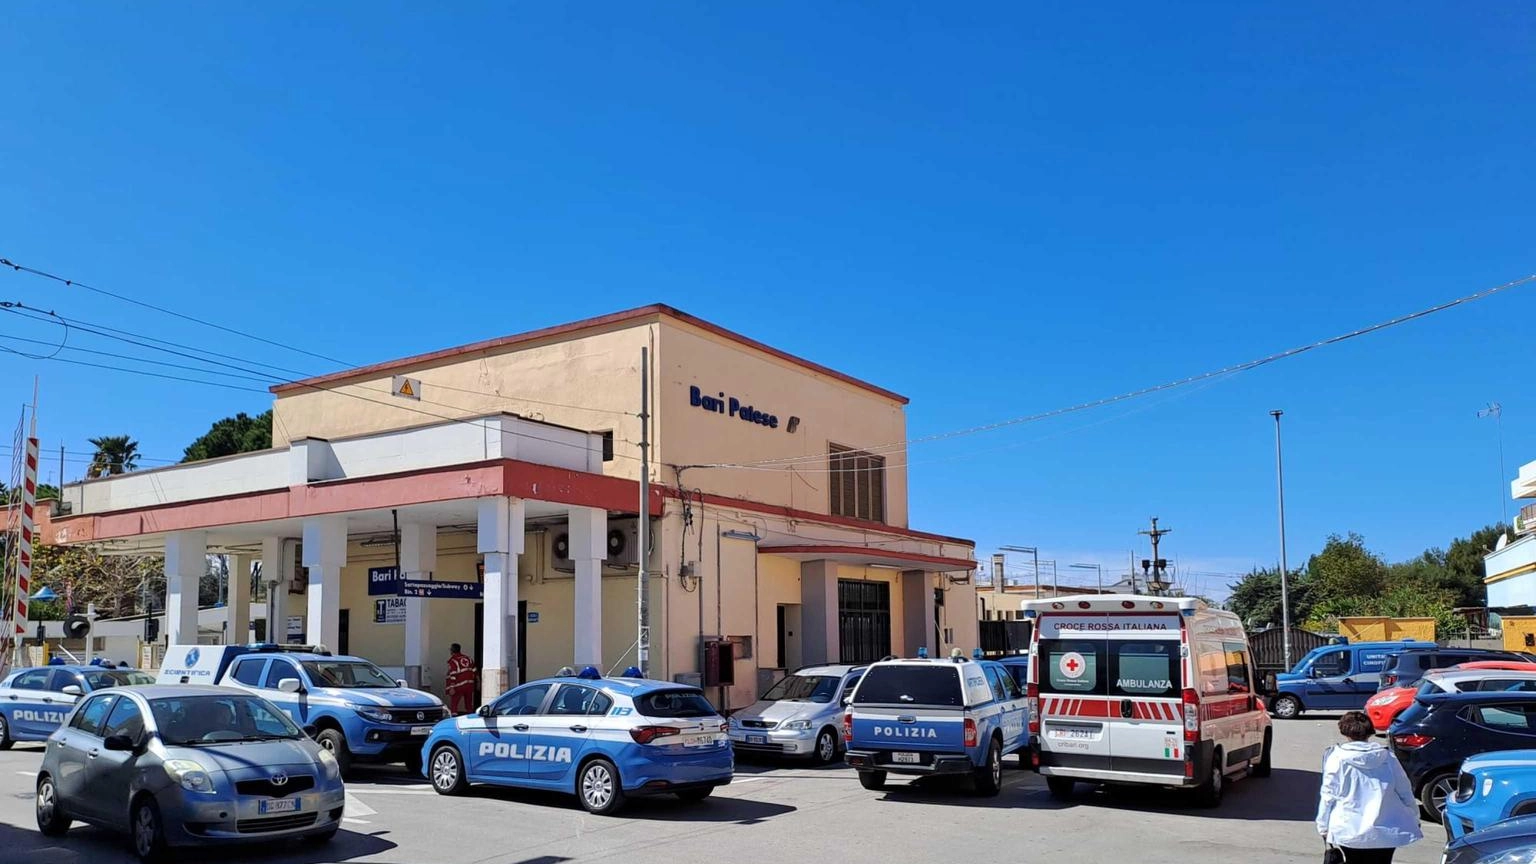 Allarme bomba in stazioni Puglia, s'indaga per terrorismo